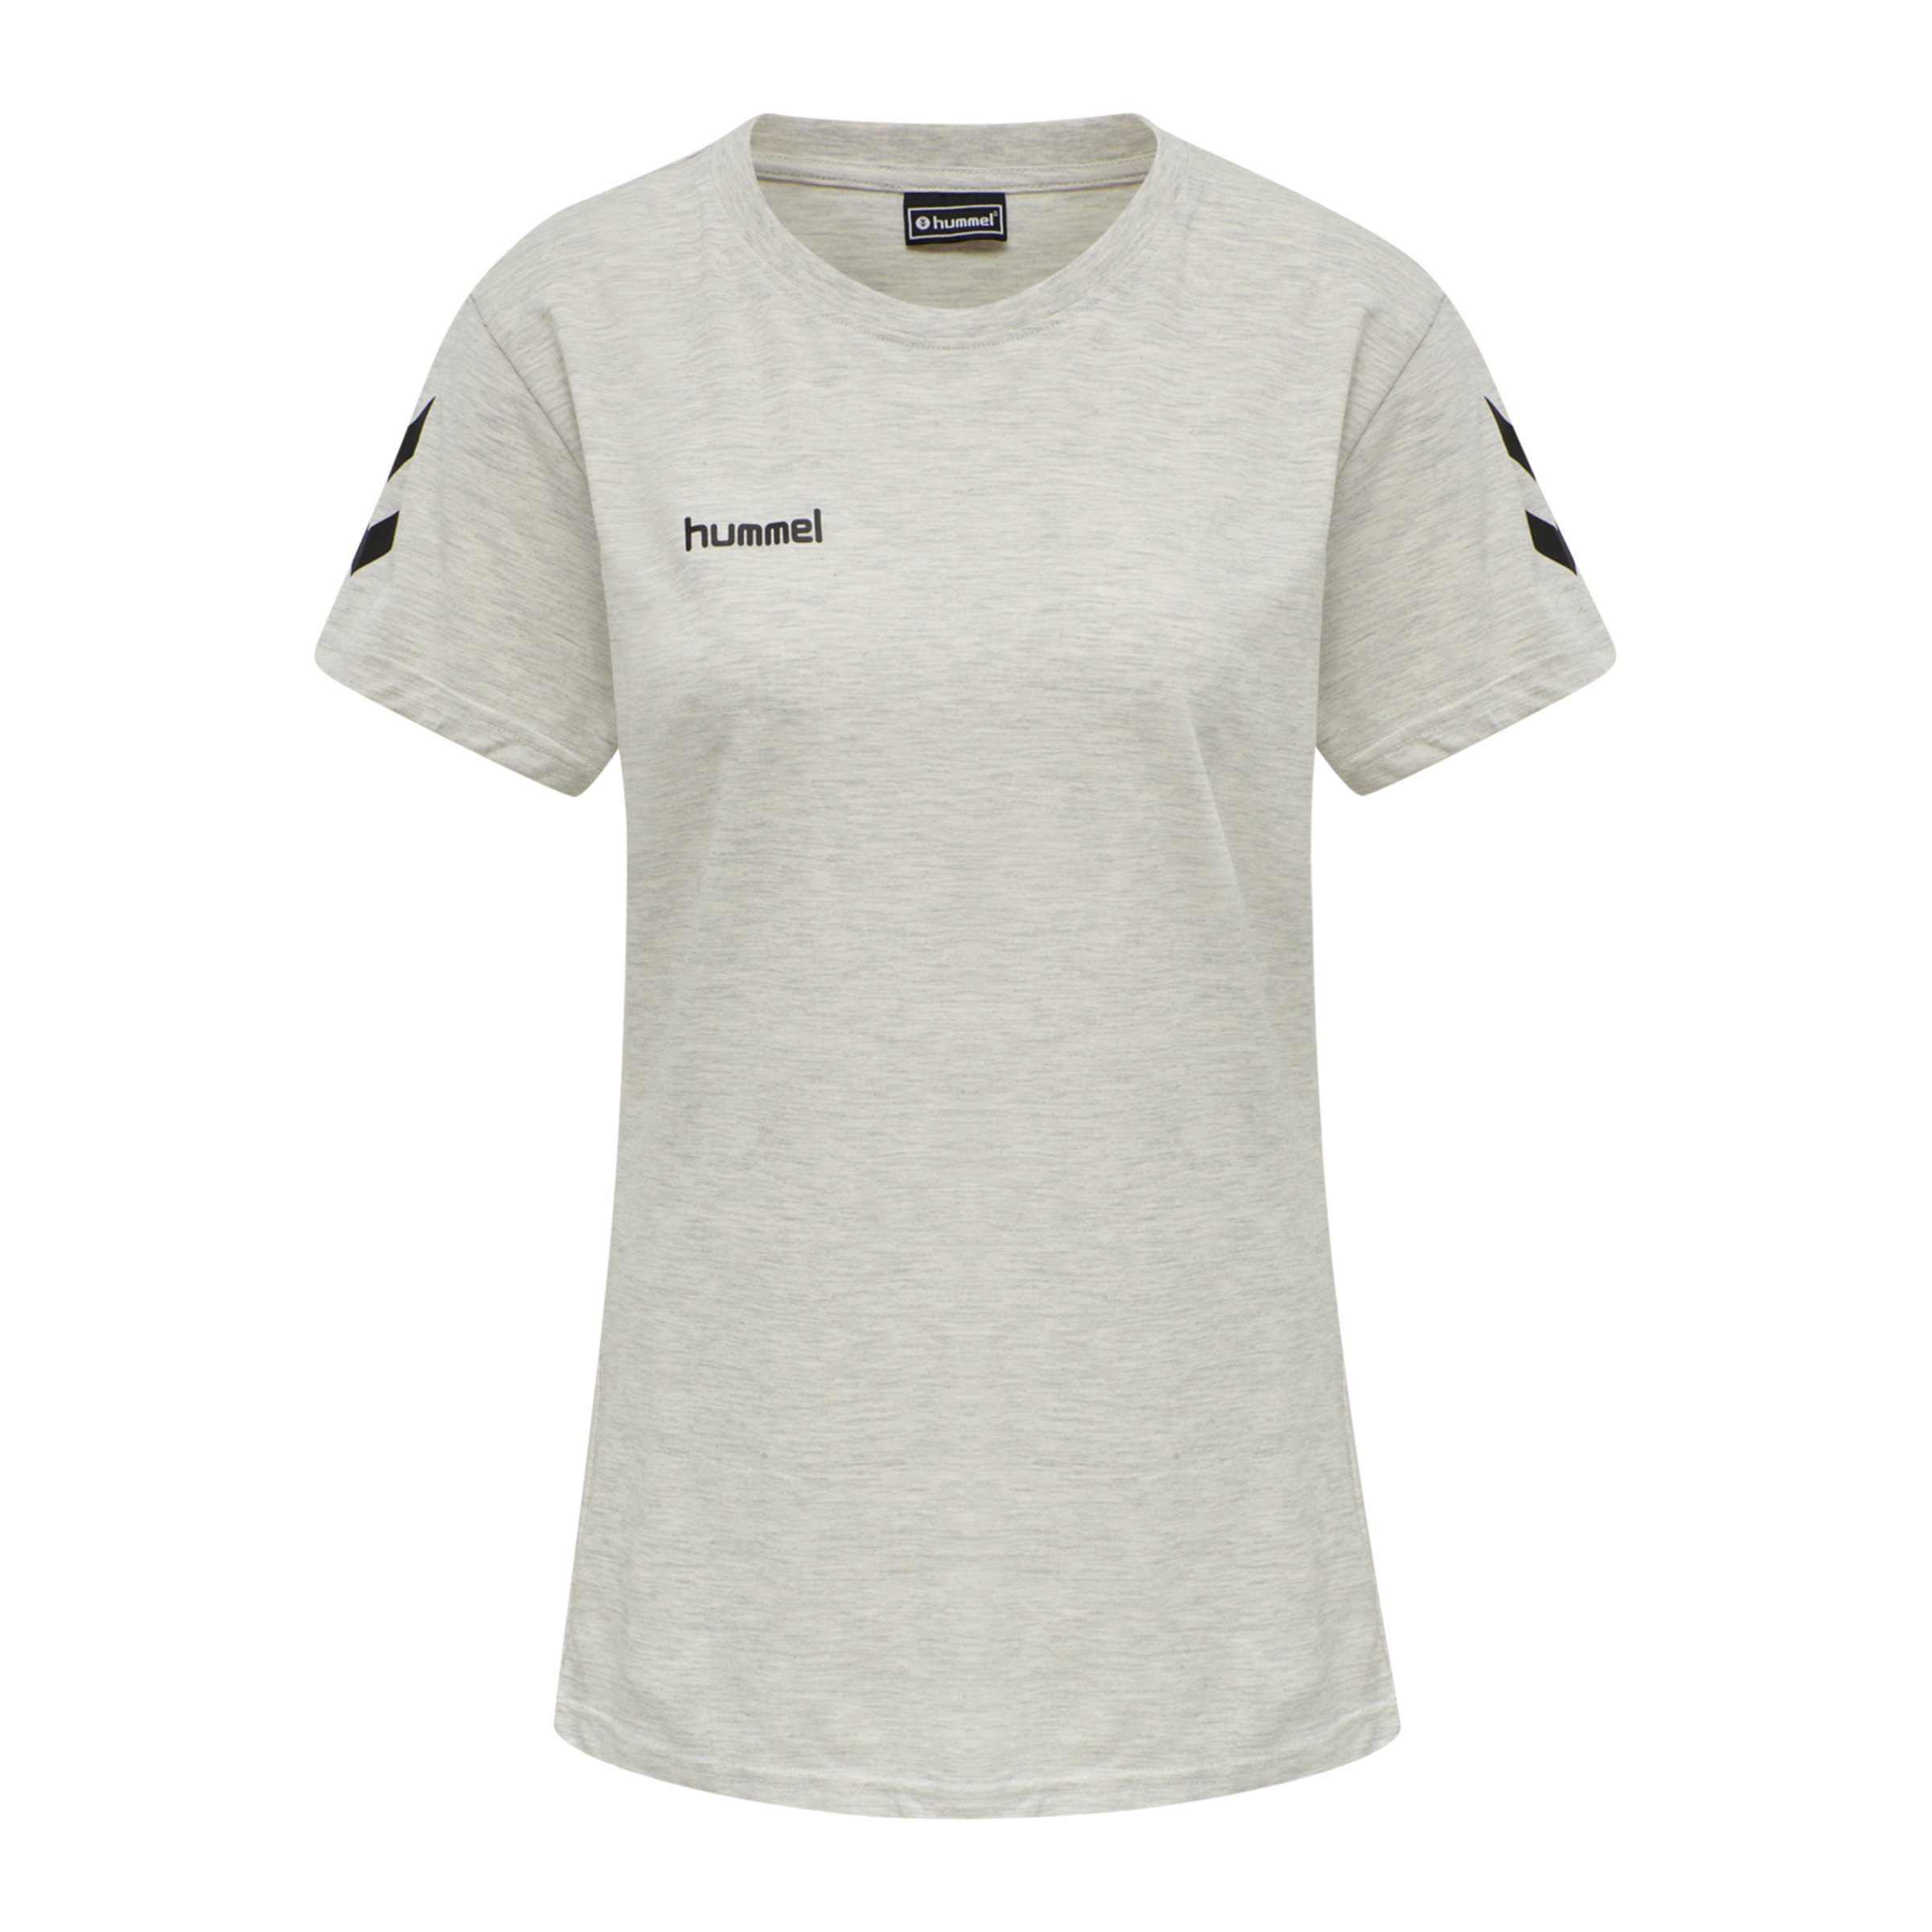 Hummel Cotton T-Shirt Damen F9158 Grau beige